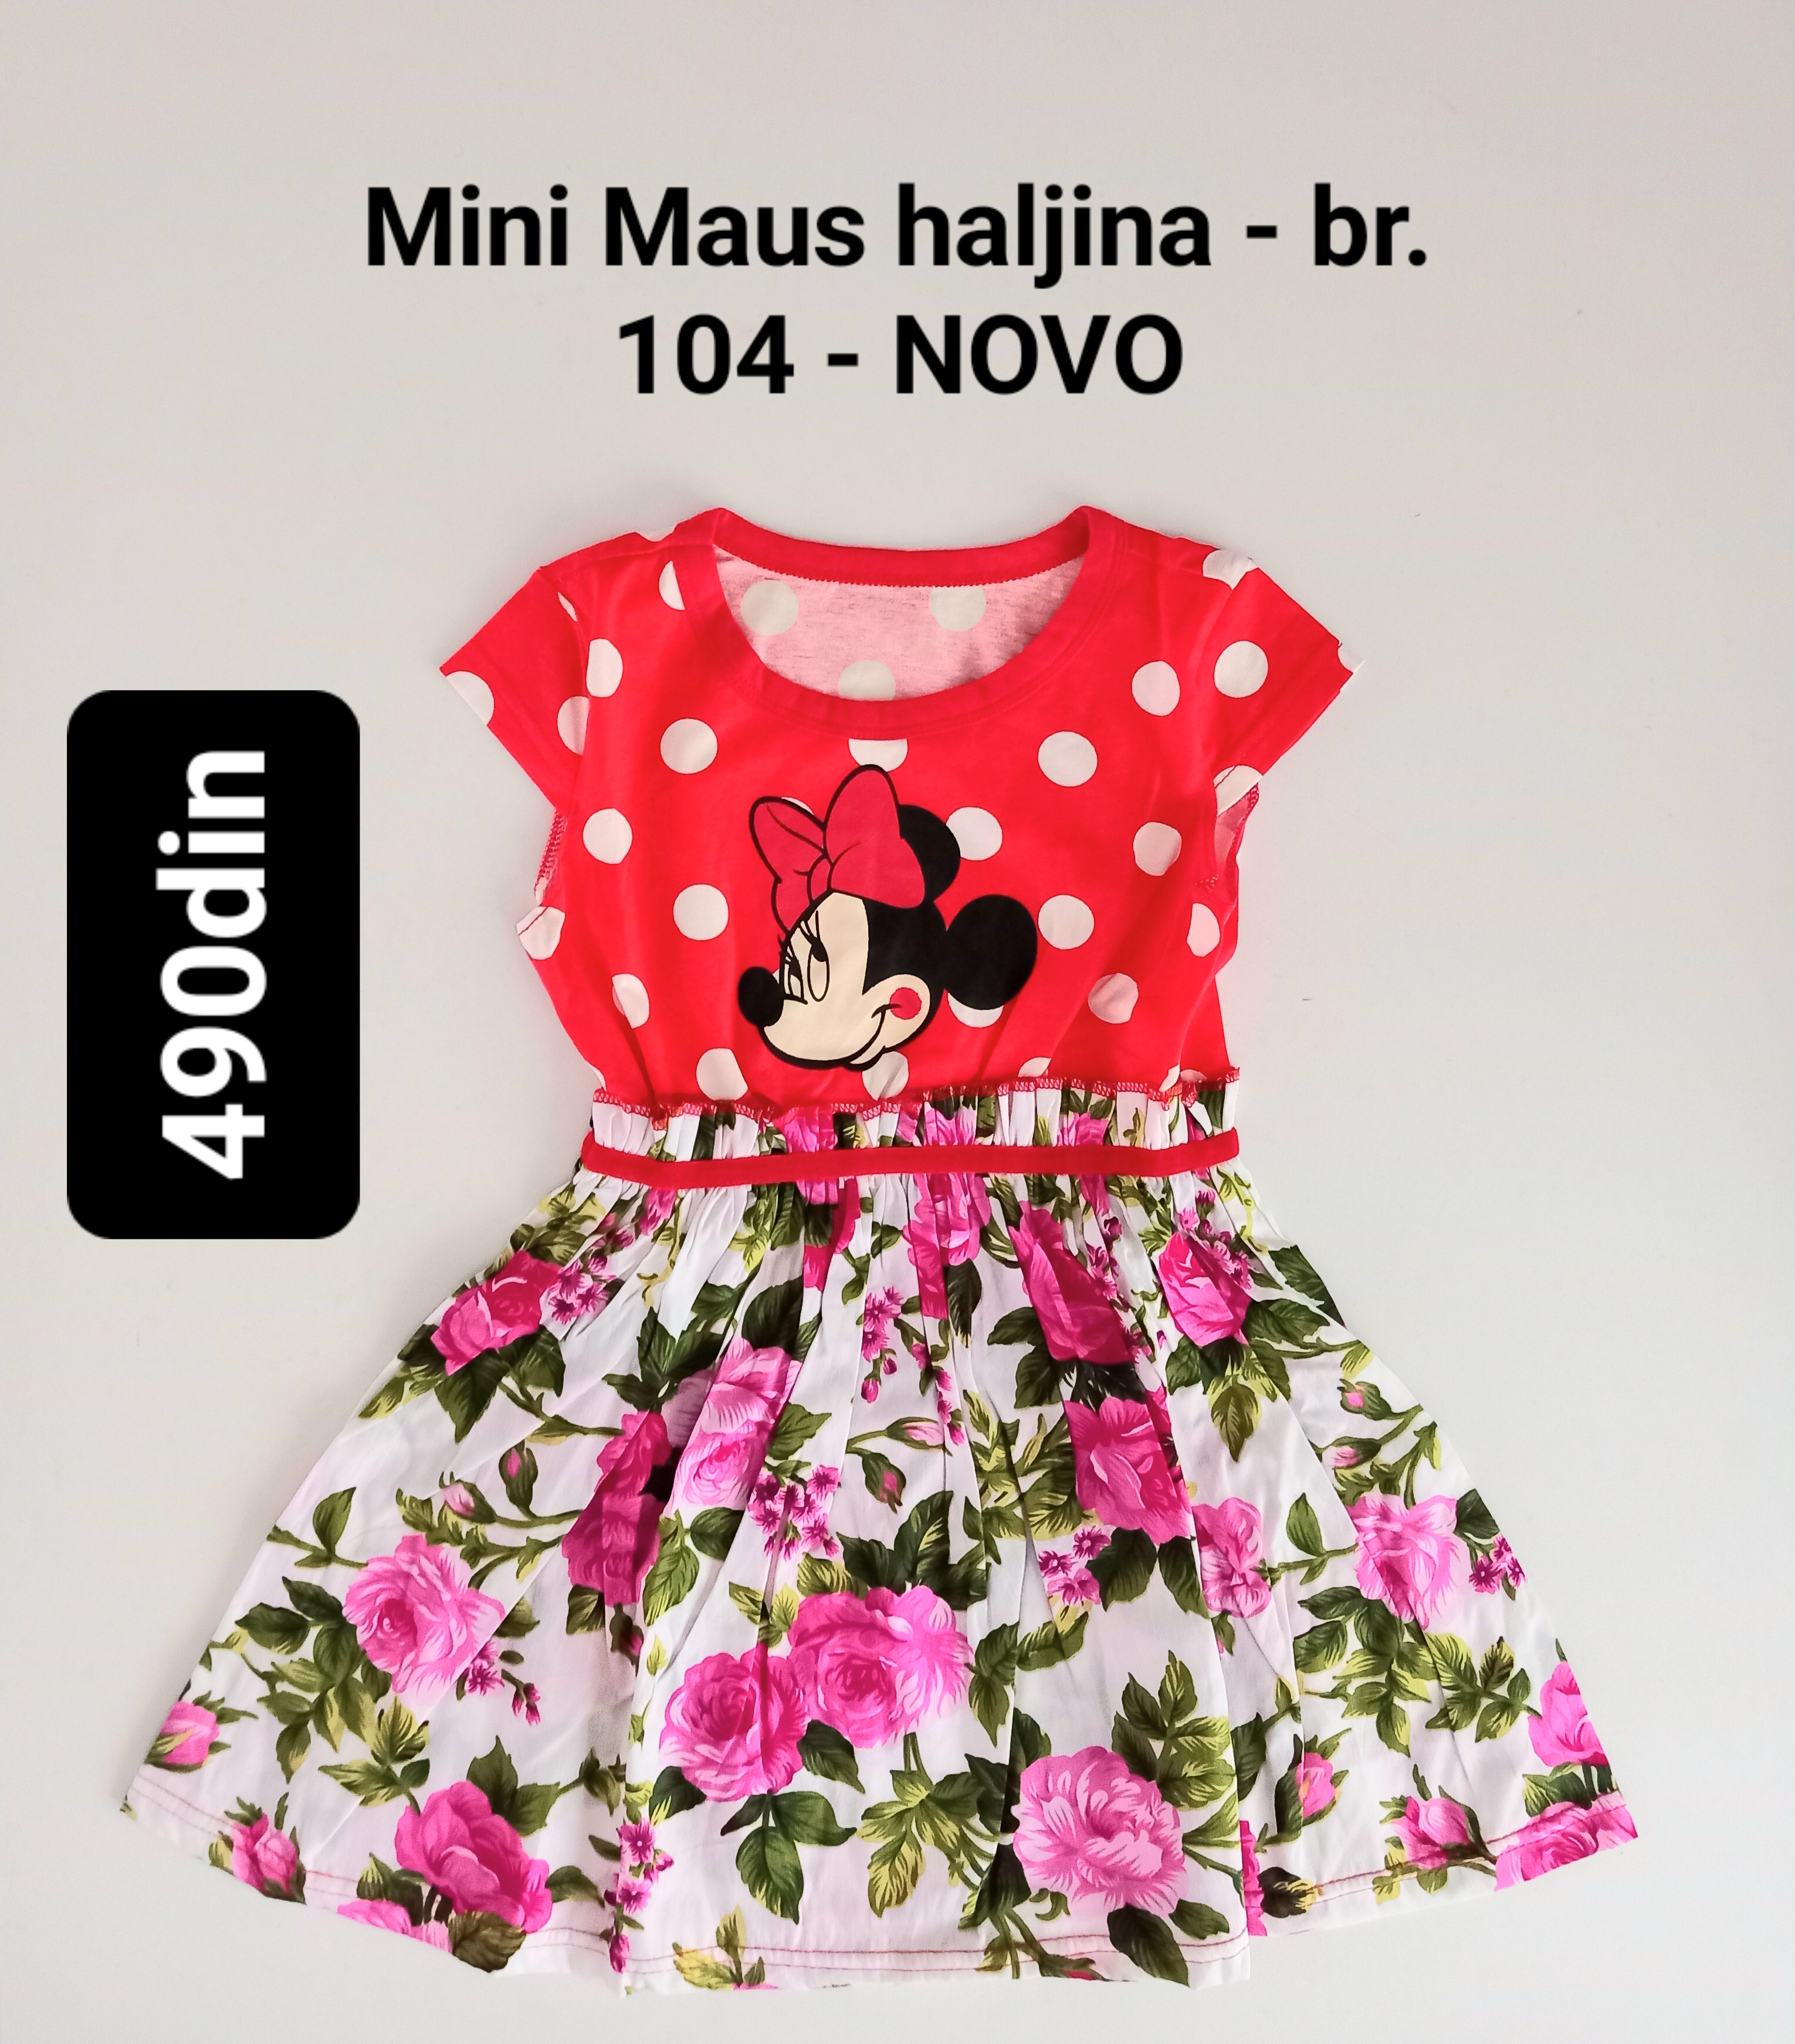 Mini Maus haljina za devojčice br. 104 - NOVO